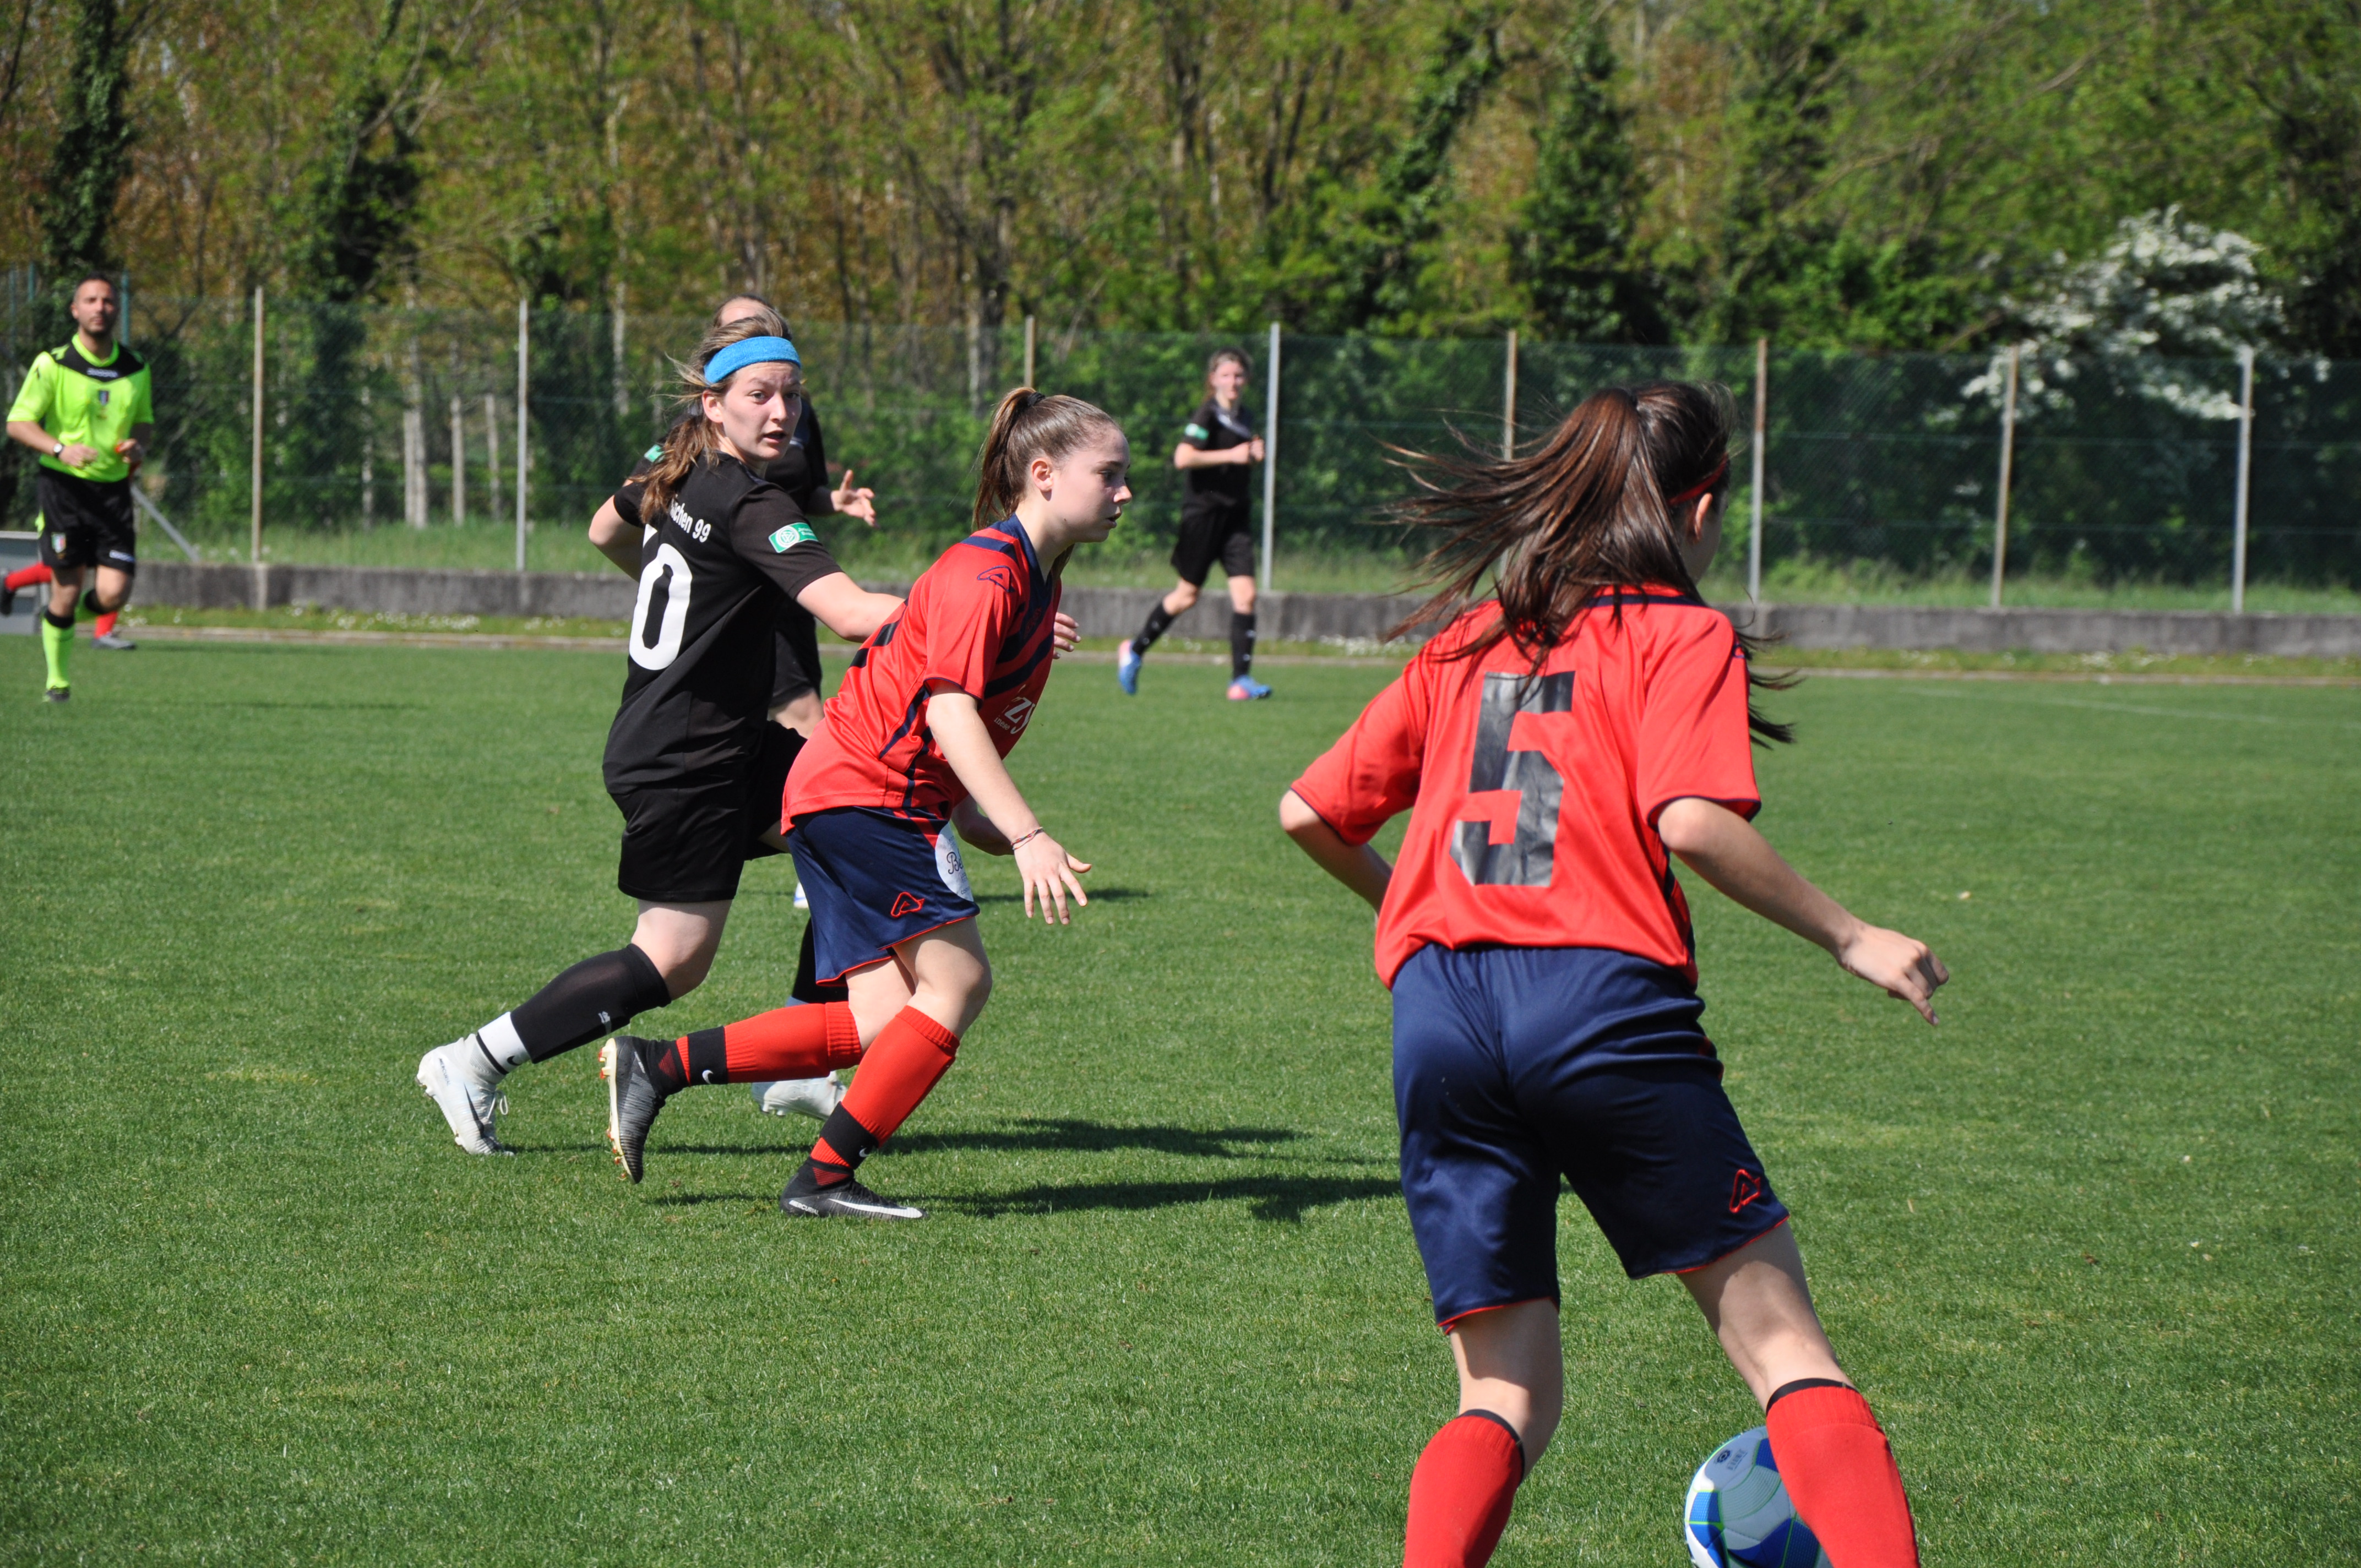 Le Donne Potranno Mai Giocare A Calcio Come Gli Uomini Ticino Today